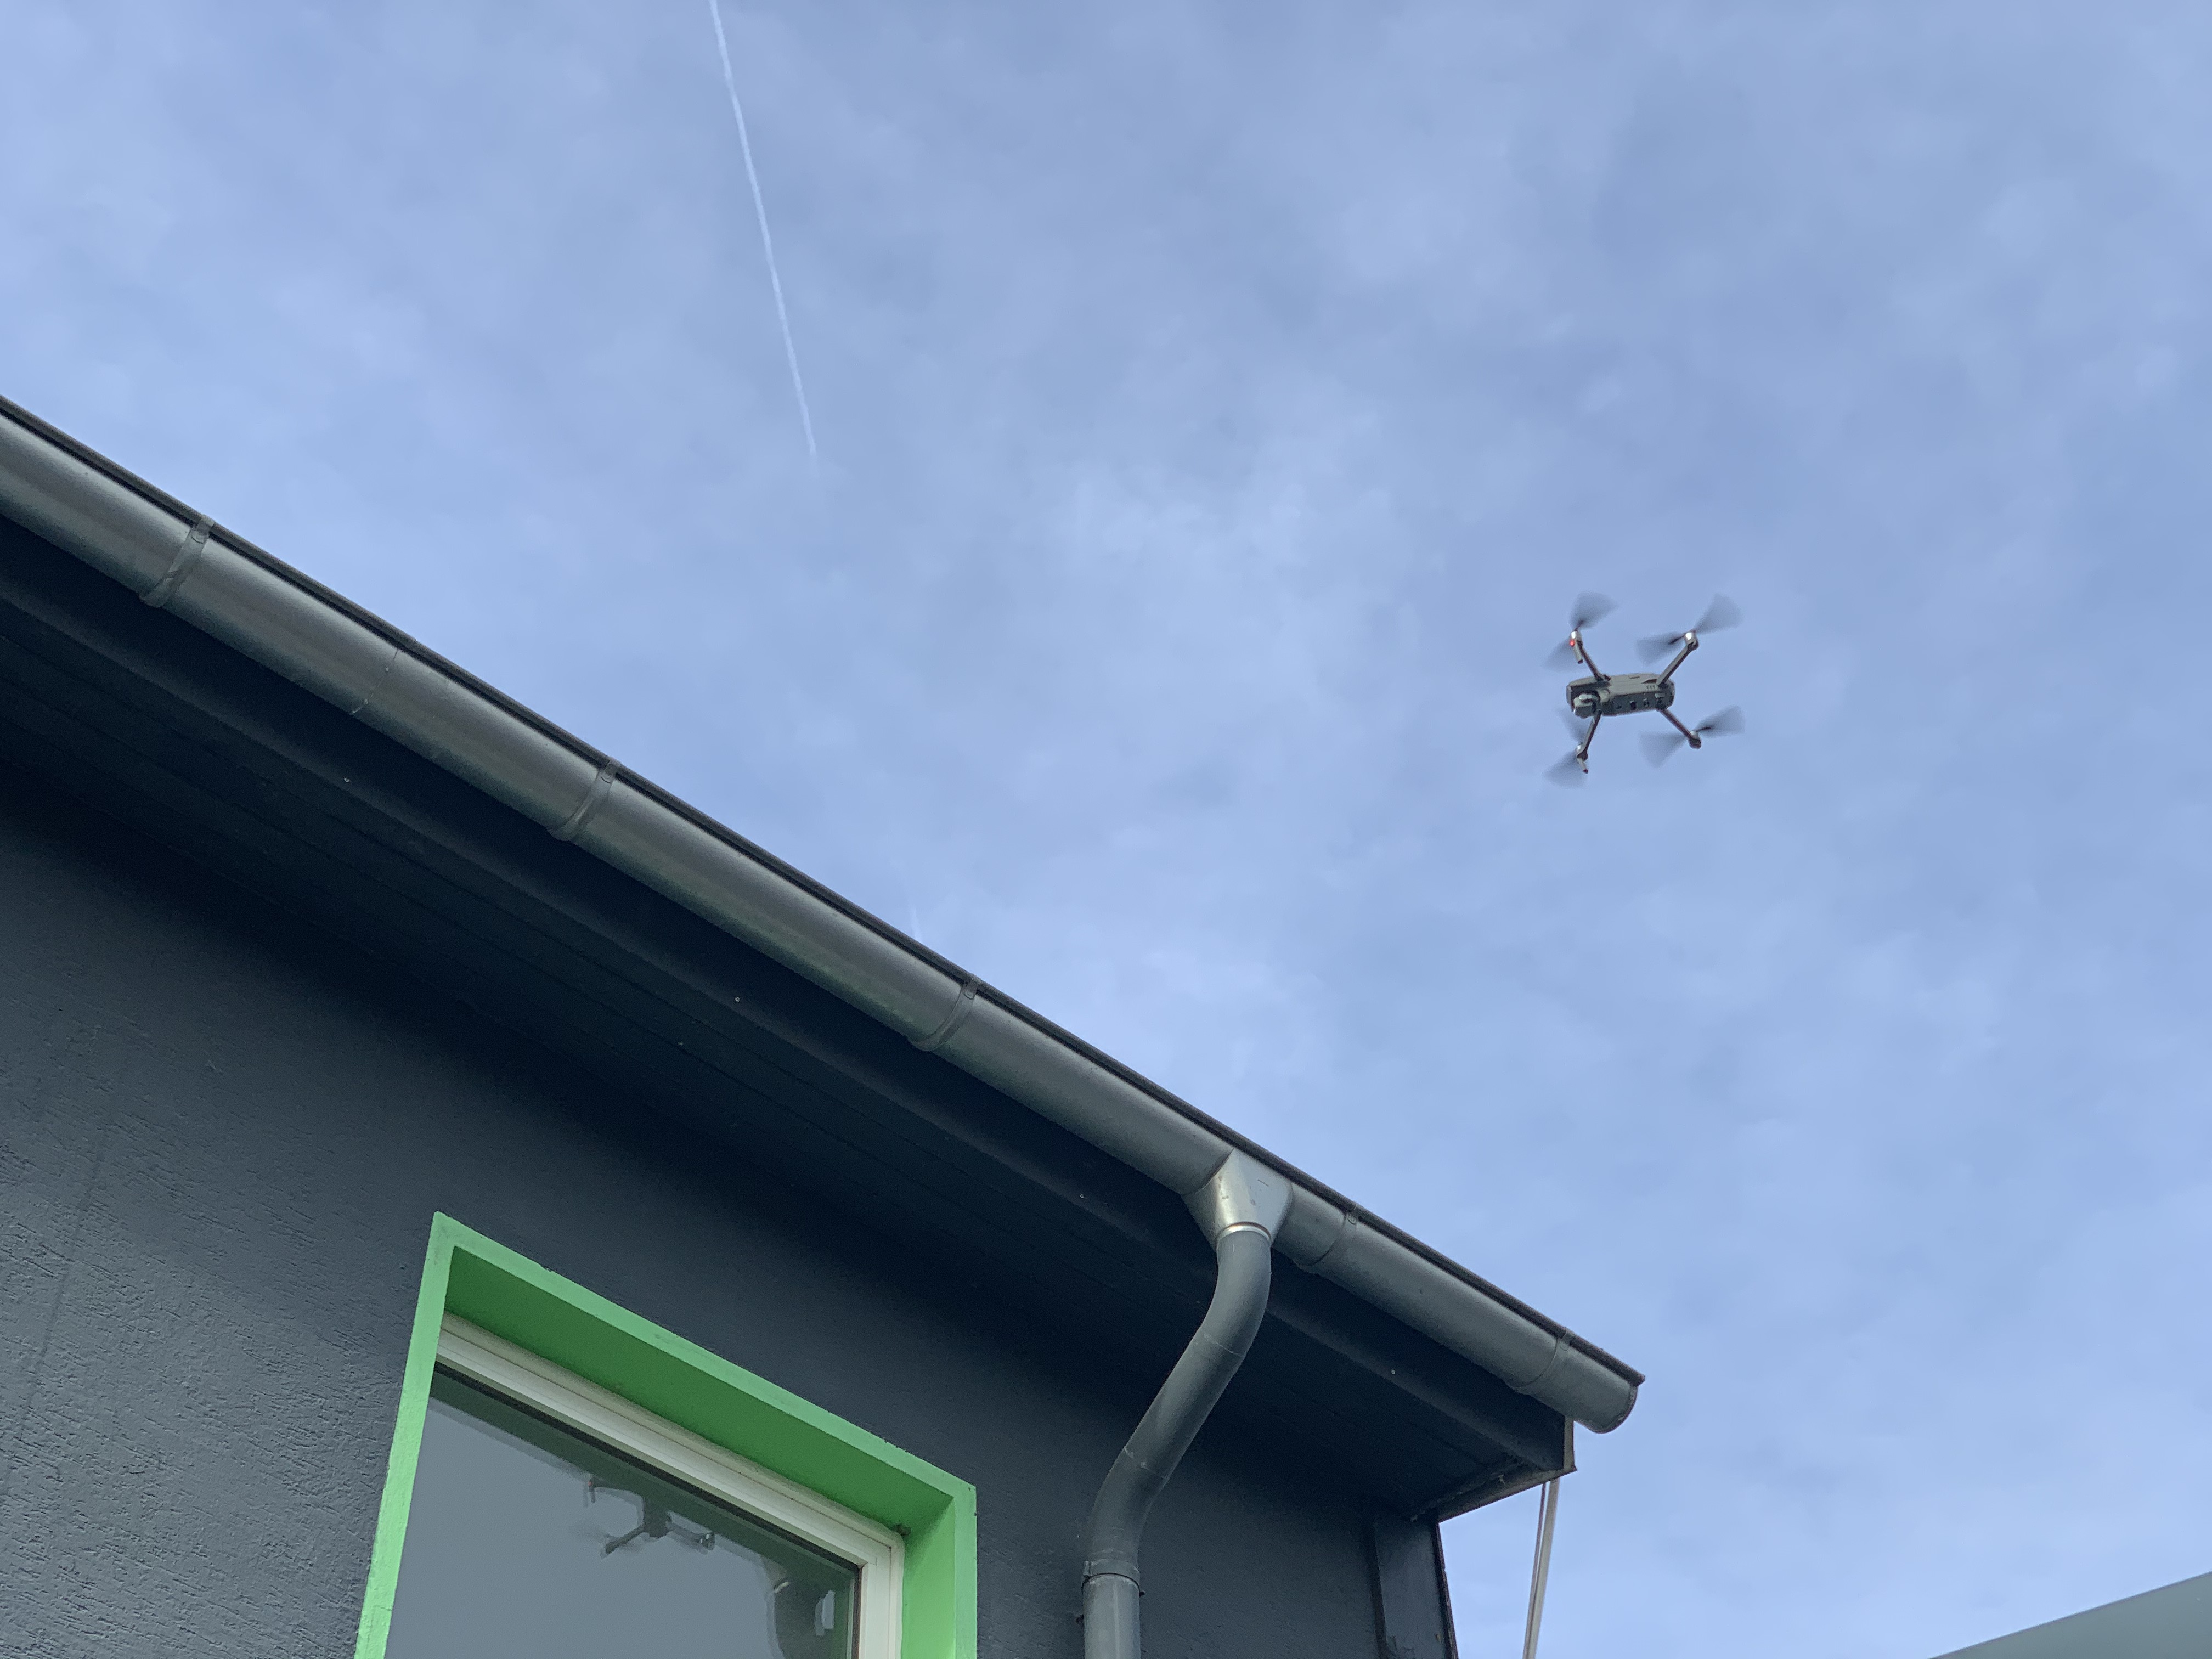 Für Inspektionen und Dokumentationen von Dächern und Dachrinnen, insbesondere bei höheren Gebäuden oder schwer zugänglichen Bauteilen, bieten wir den Einsatz von unbemannten Luftfahrzeugen (Drohnen) an, um den Umfang eventueller Schäden fachlich zu beurteilen